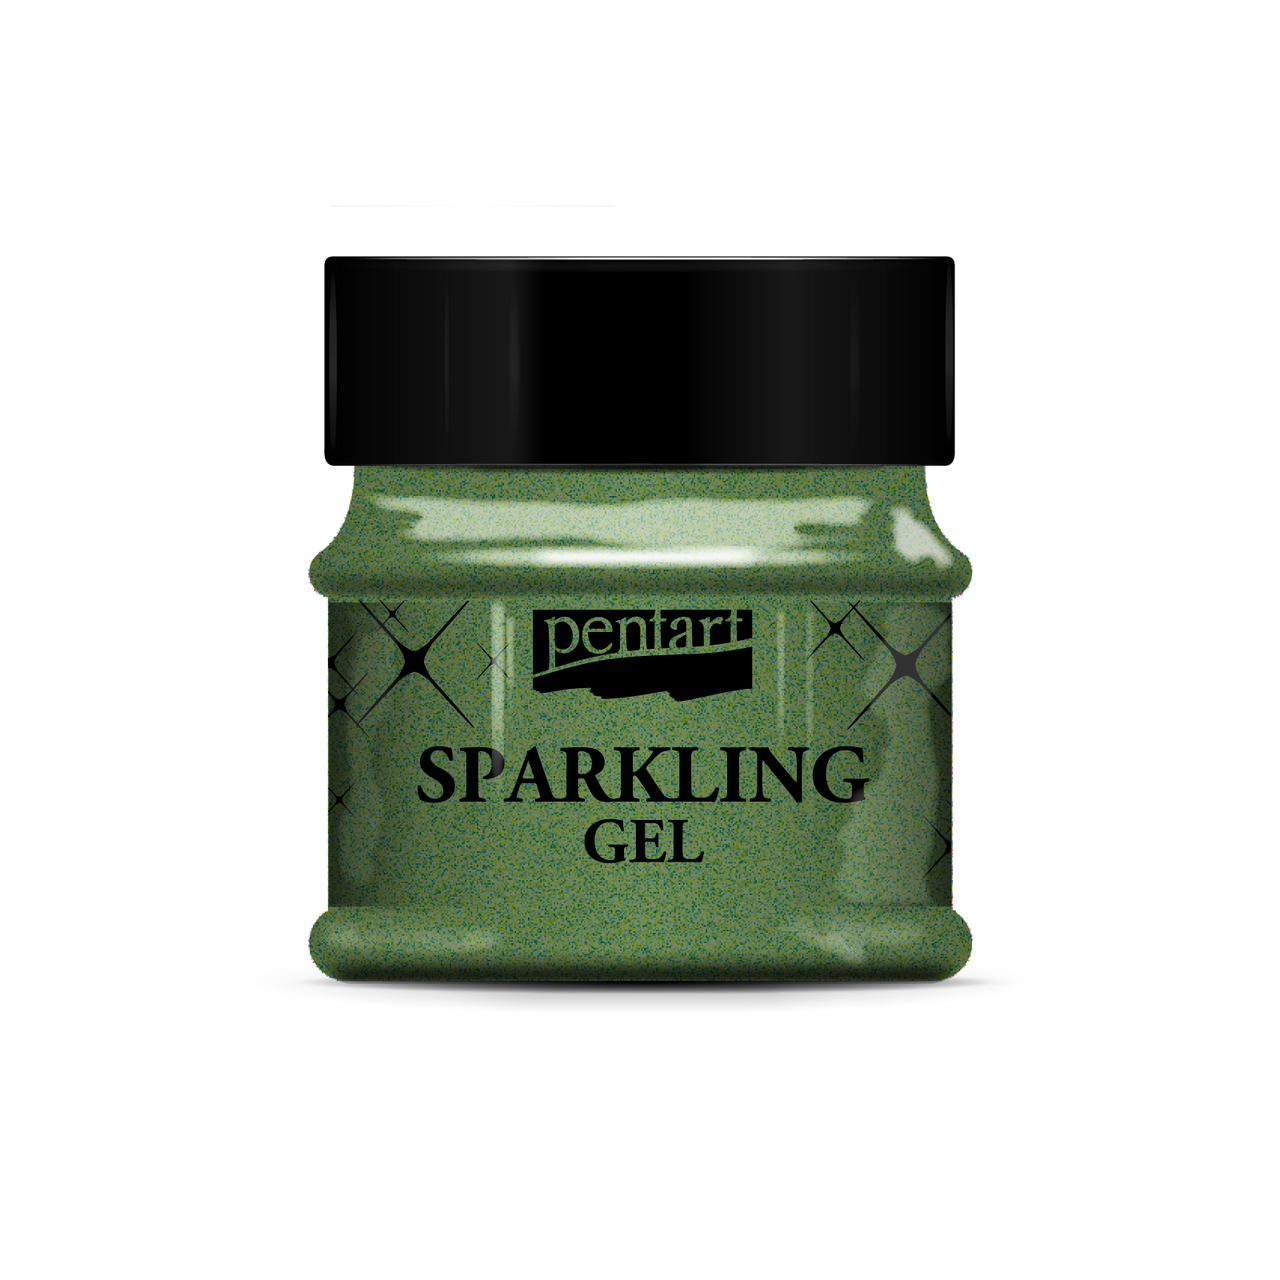 Pentart - Sparkling Gel - 50 ml / 1.69 ounces